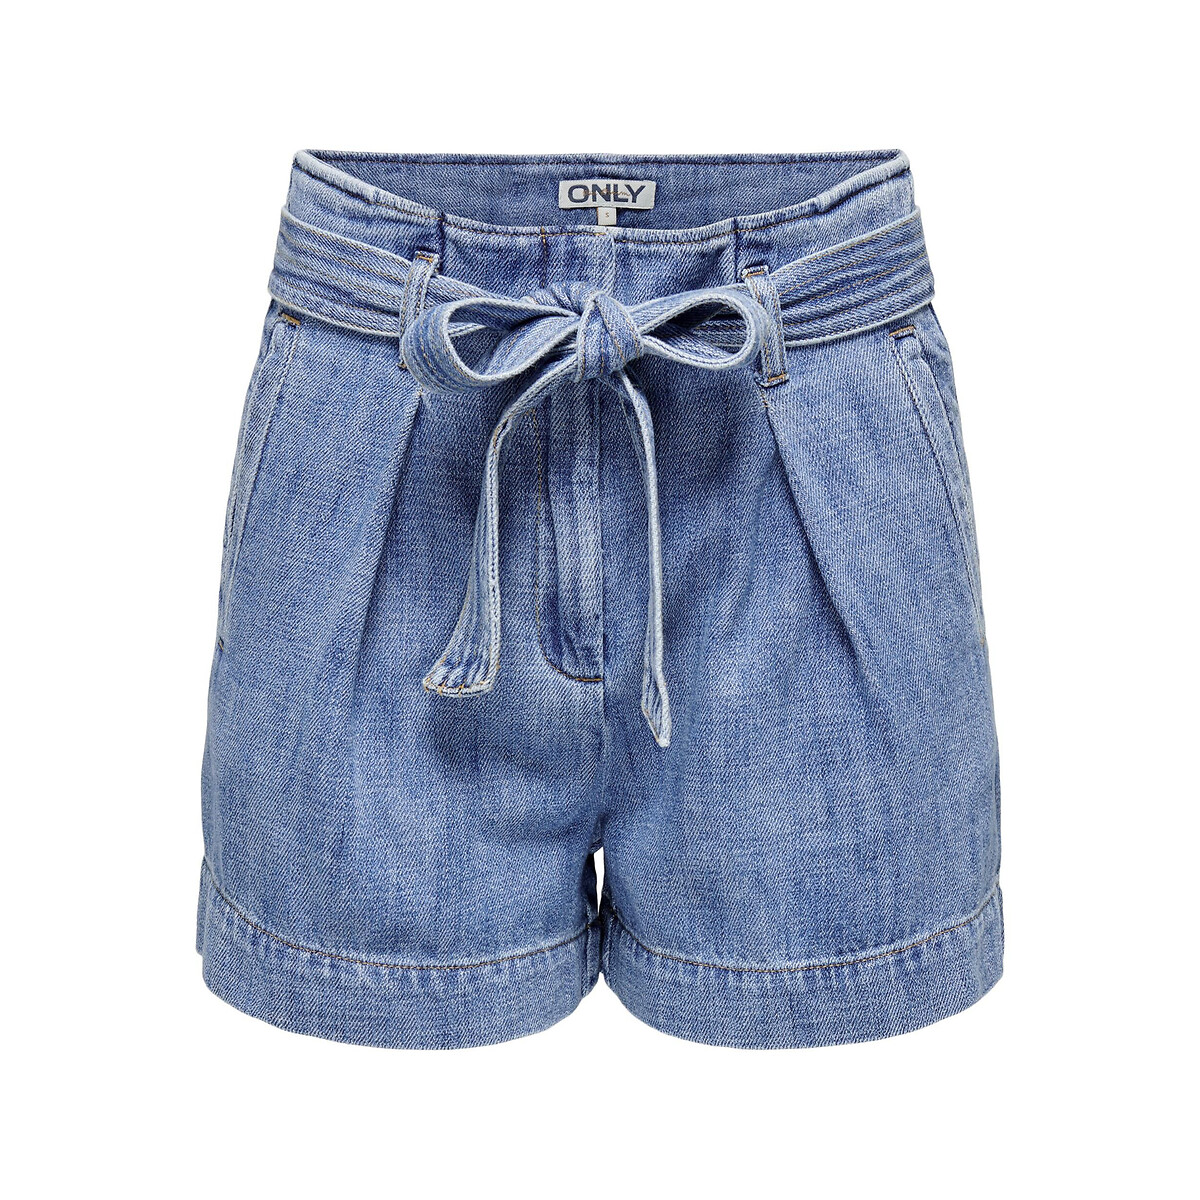 Шорты из джинсовой ткани  S синий LaRedoute, размер S - фото 5